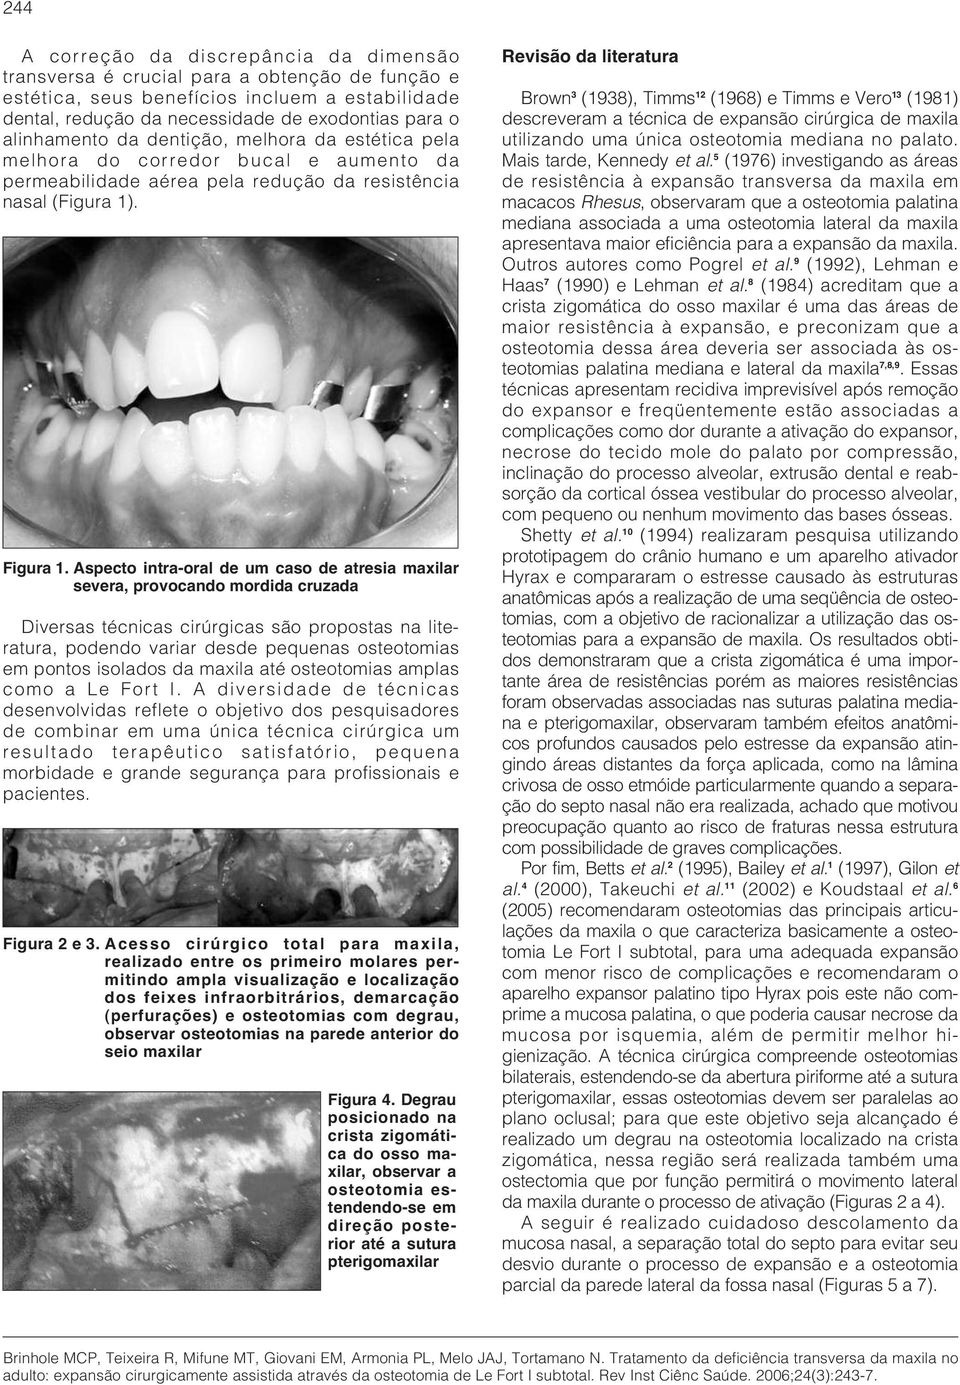 Aspecto intra-oral de um caso de atresia maxilar severa, provocando mordida cruzada Diversas técnicas cirúrgicas são propostas na literatura, podendo variar desde pequenas osteotomias em pontos